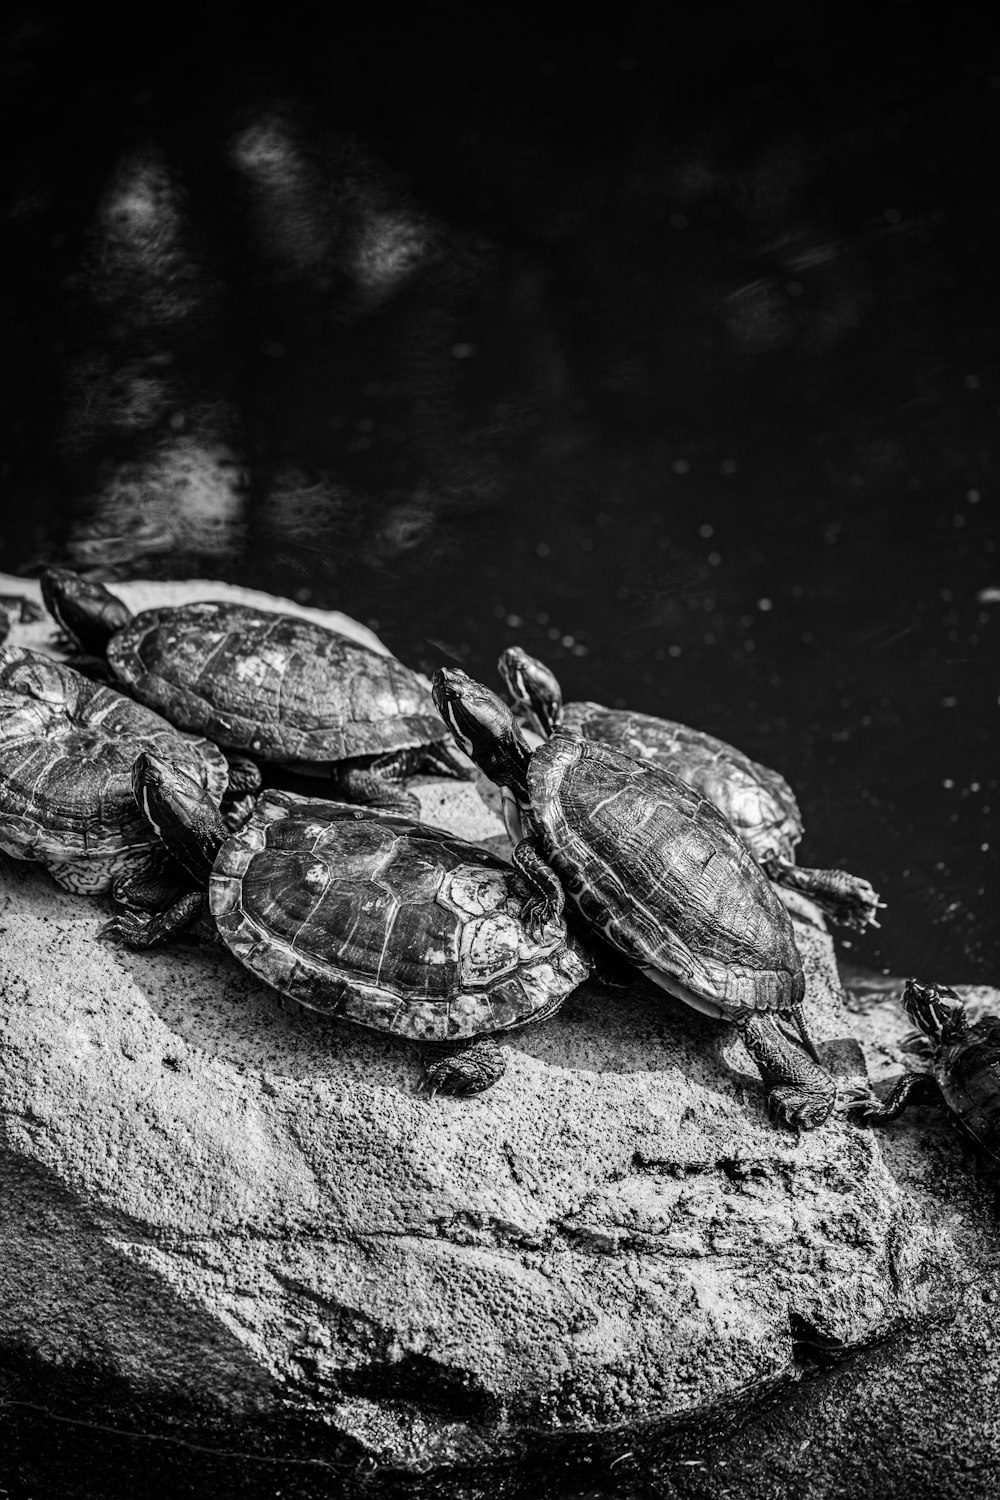 tartaruga na água na fotografia em tons de cinza